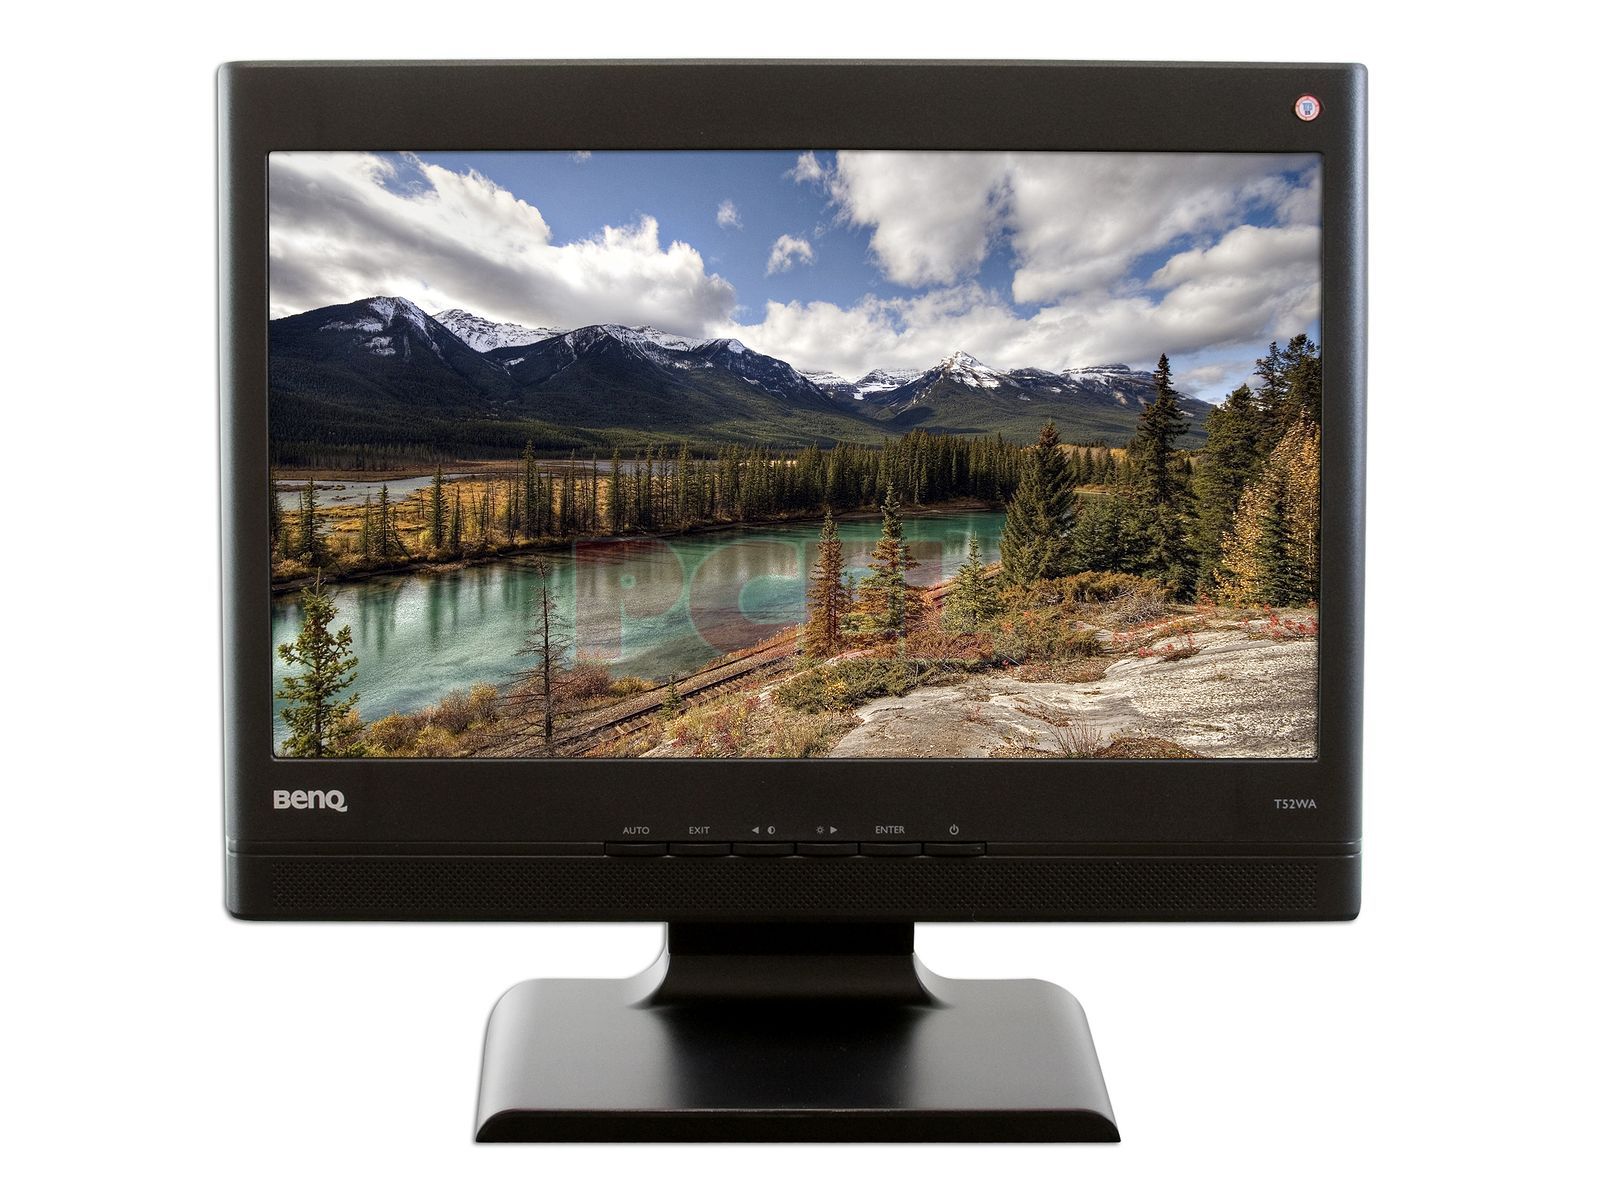 Monitor LCD BenQ Widescreen de 15 Modelo T52WA